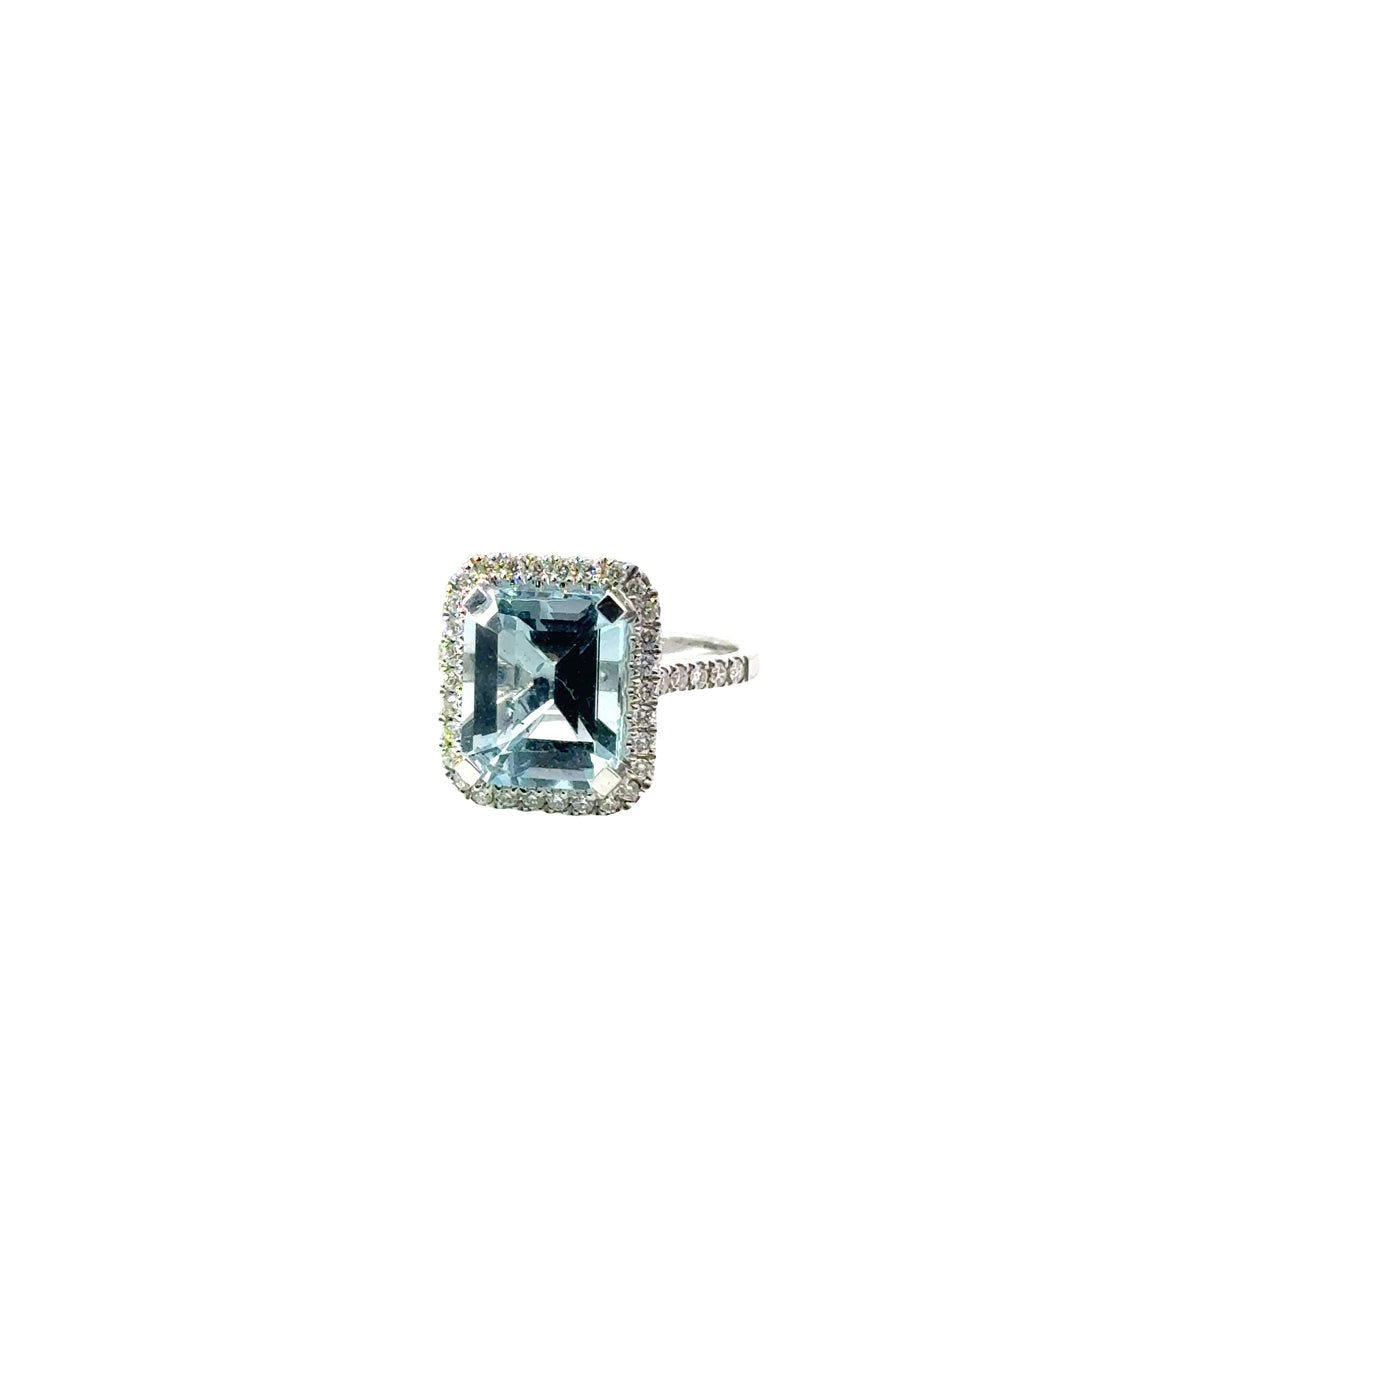 Elegant Aquamarine Ring with Diamond Halo - 18K White Gold